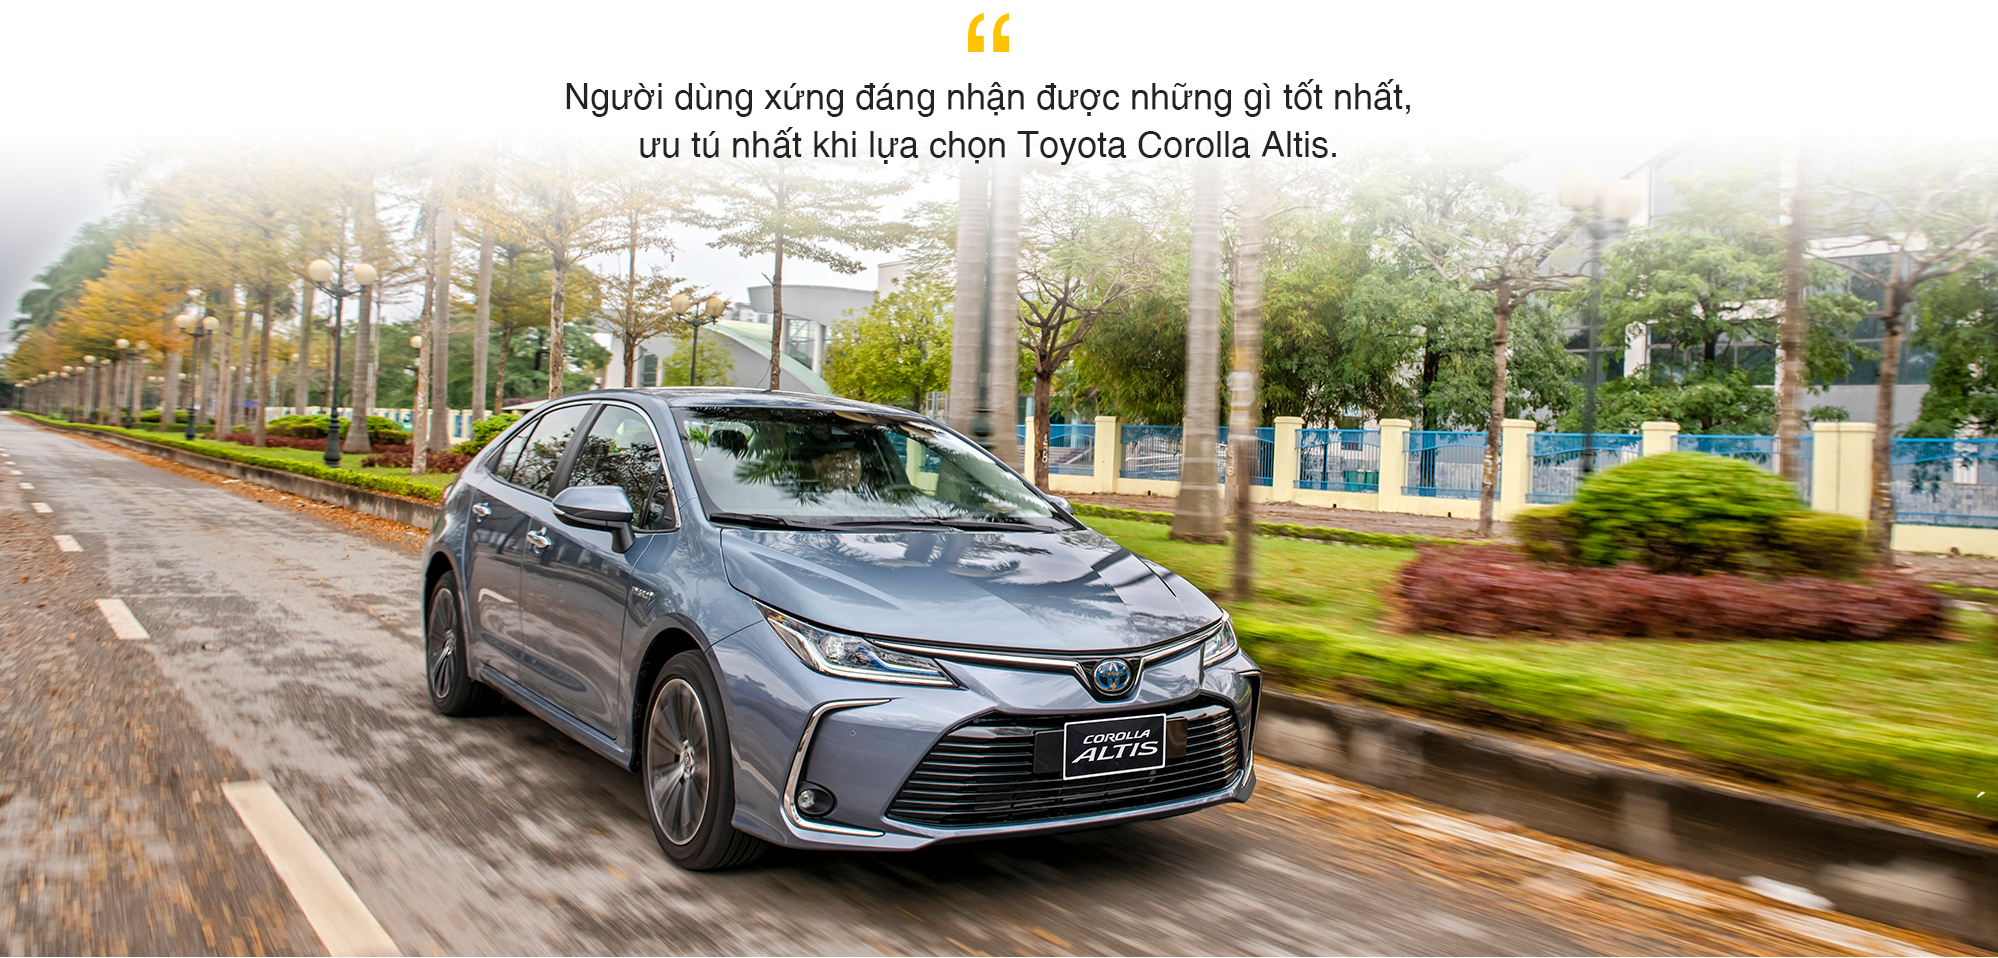 Toyota Corolla Altis – sedan đẳng cấp cho các doanh nhân trẻ thành đạt - Ảnh 14.